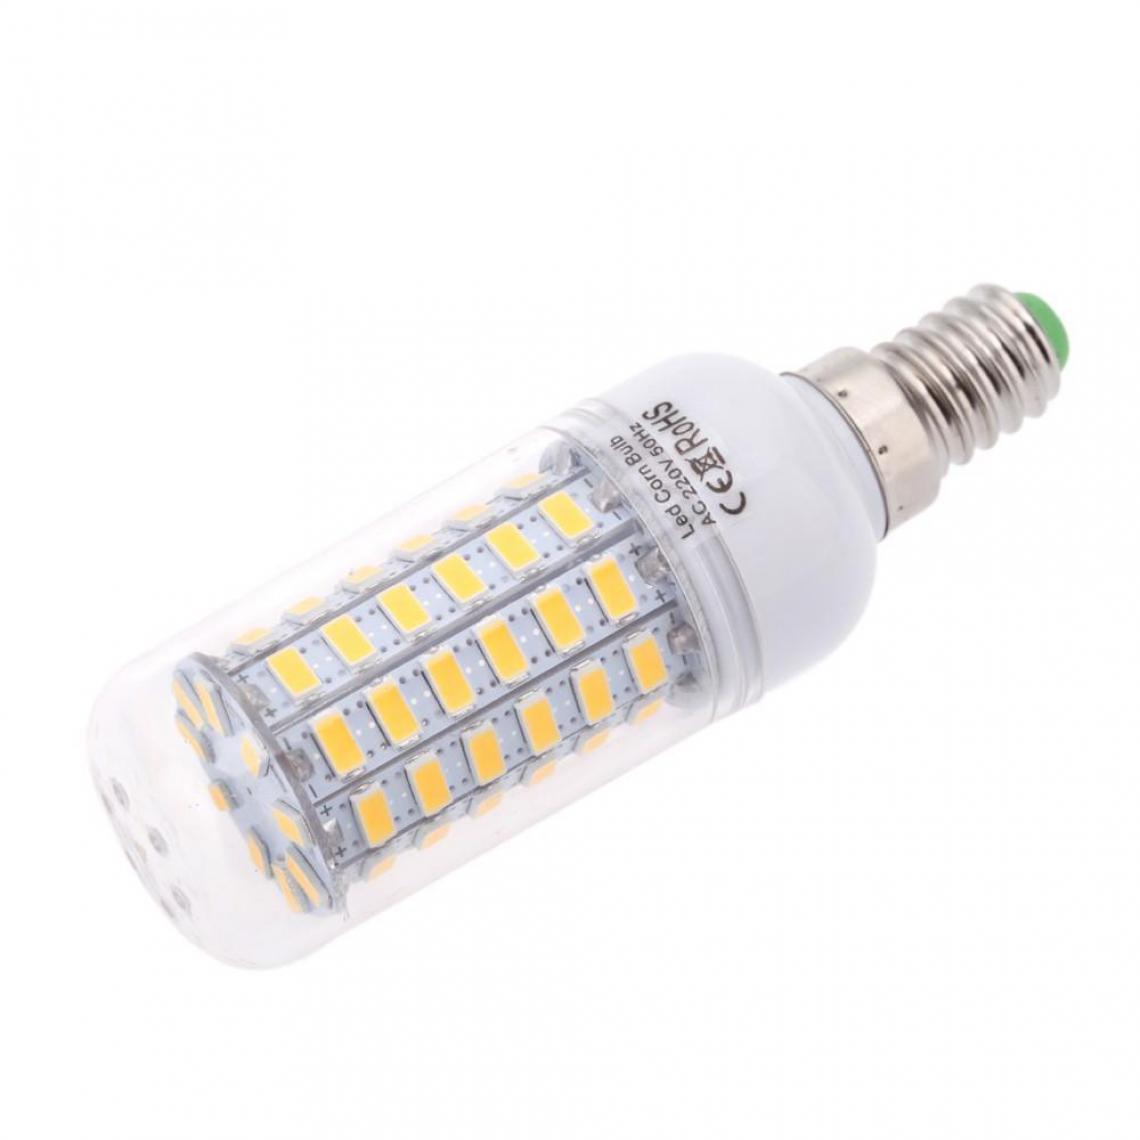 Justgreenbox - Ampoule de maïs à économie d'énergie 360 degrés 200-240V E14, Cold Blanc, 9W - Ampoules LED